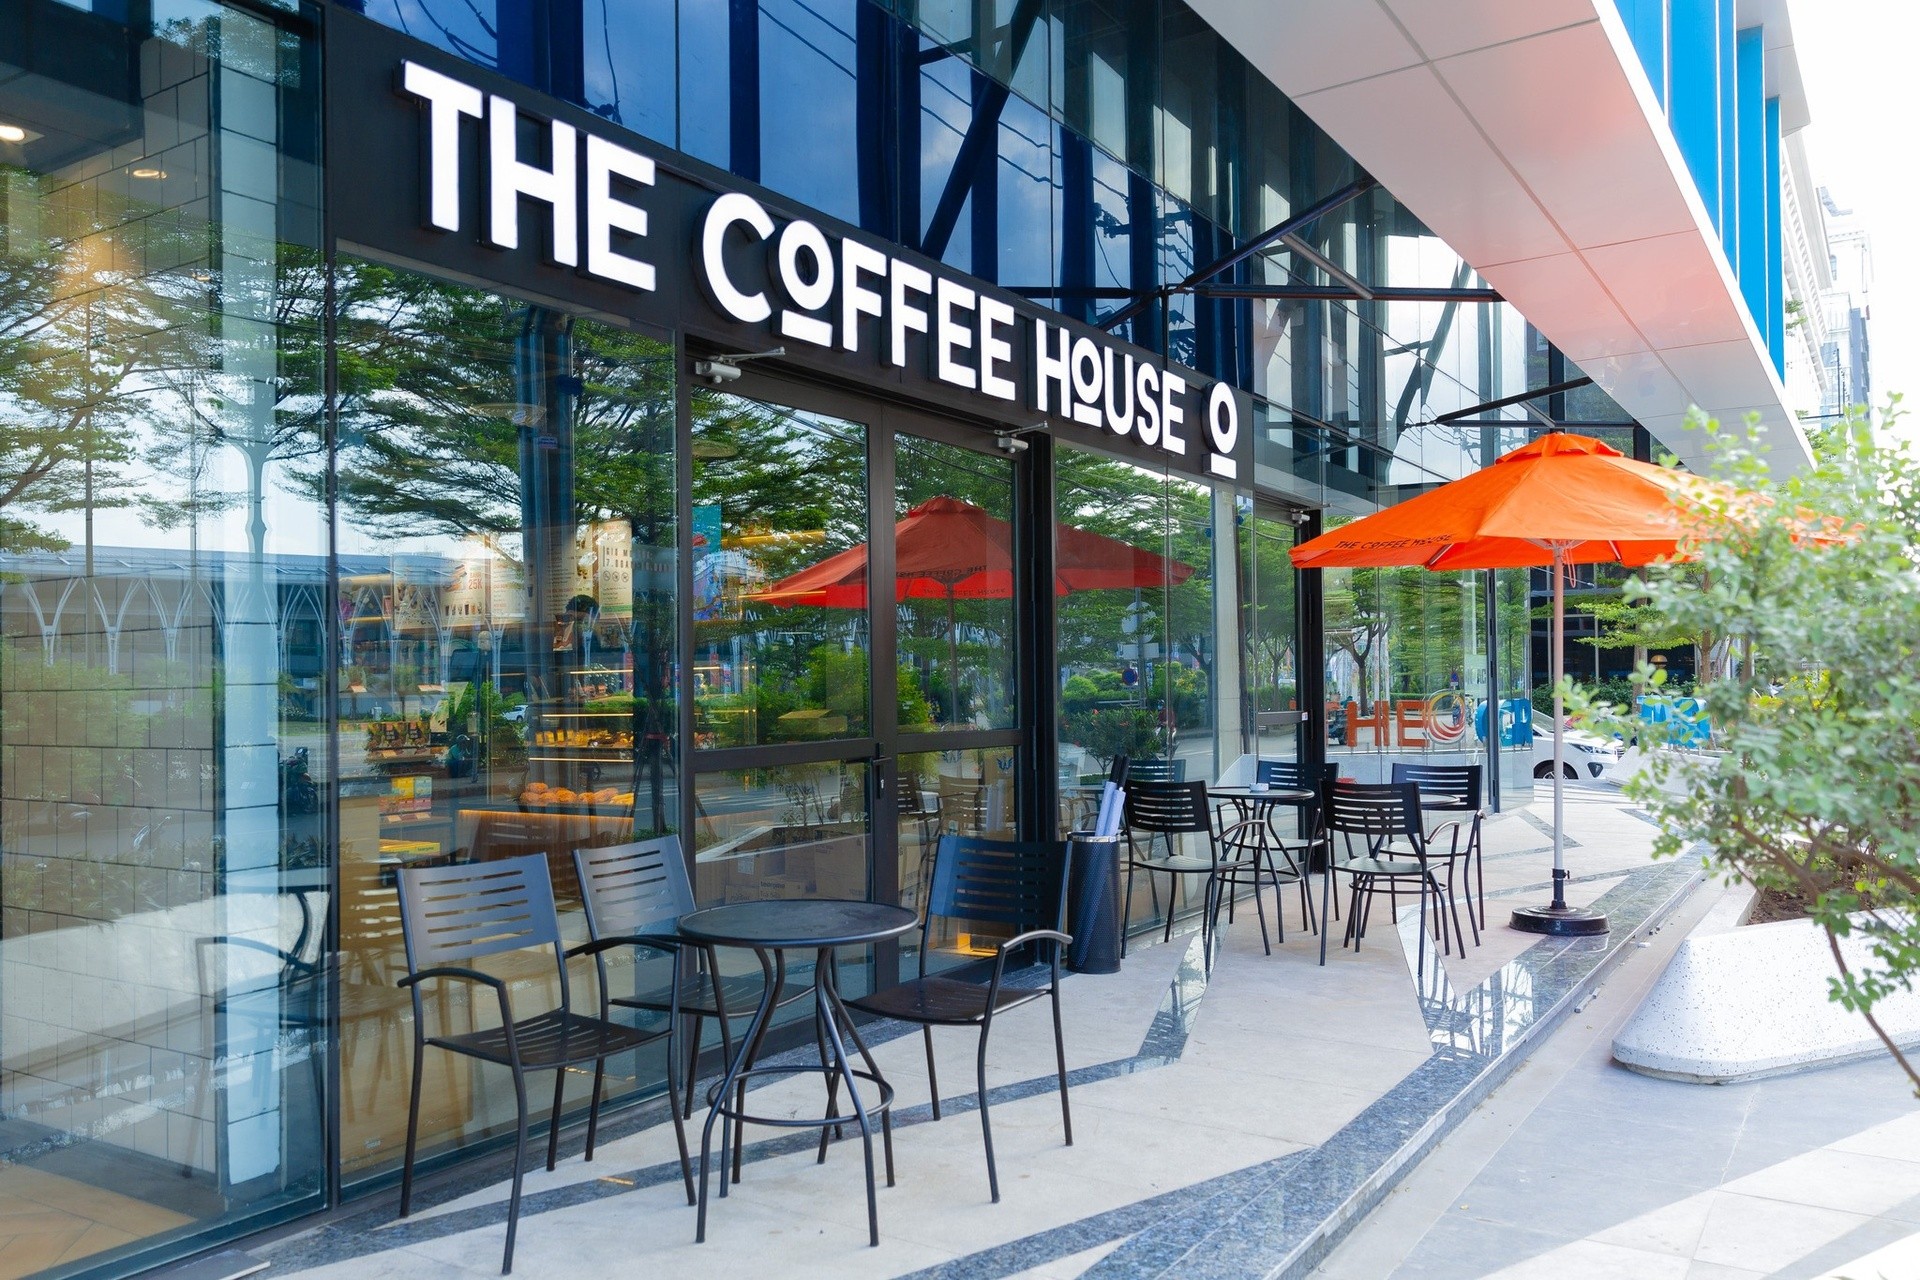 
Vào cuối tháng 10/2021, sau khi tiến hành đóng cửa hàng loạt quán lớn, kể cả cửa hàng signature thì The Coffee House cũng đã cho ra mắt kiosk đầu tiên
